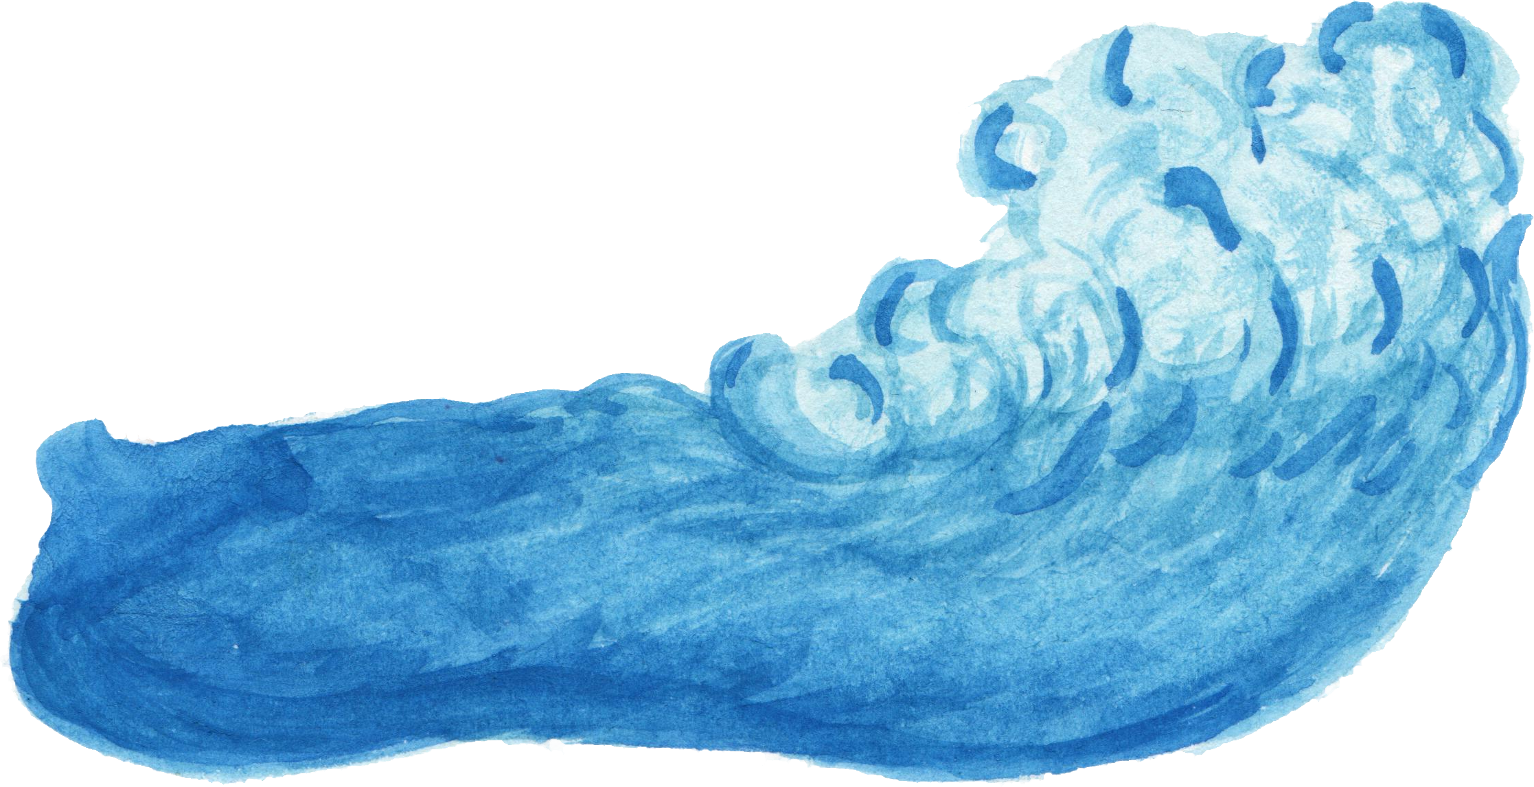 Ocean clipart watercolor, Ocean watercolor Transparent FREE for